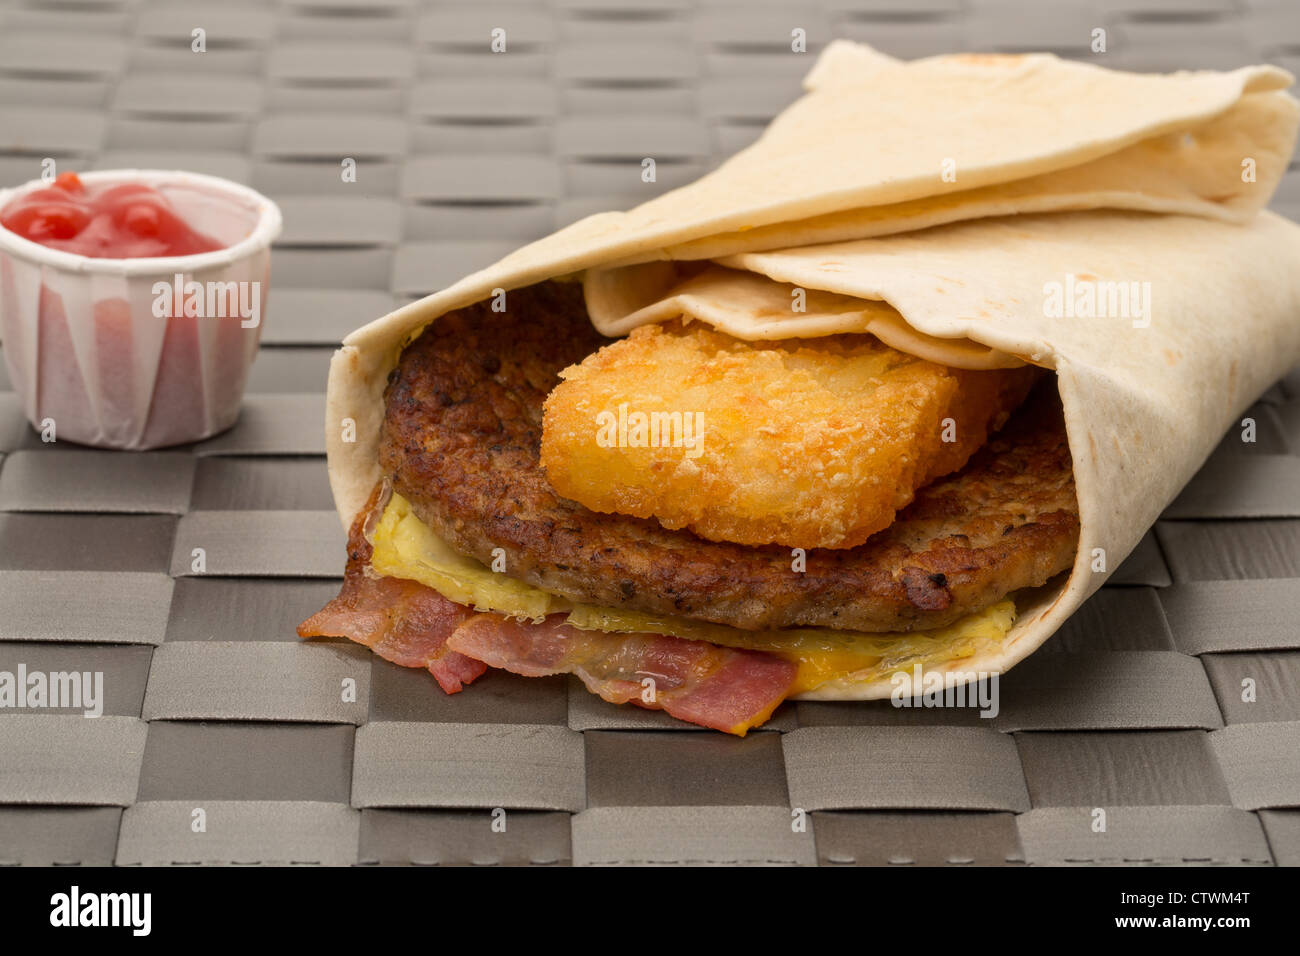 Burger avvolgere sandwich con pancetta e un hash brown - profondità di campo - studio shot Foto Stock